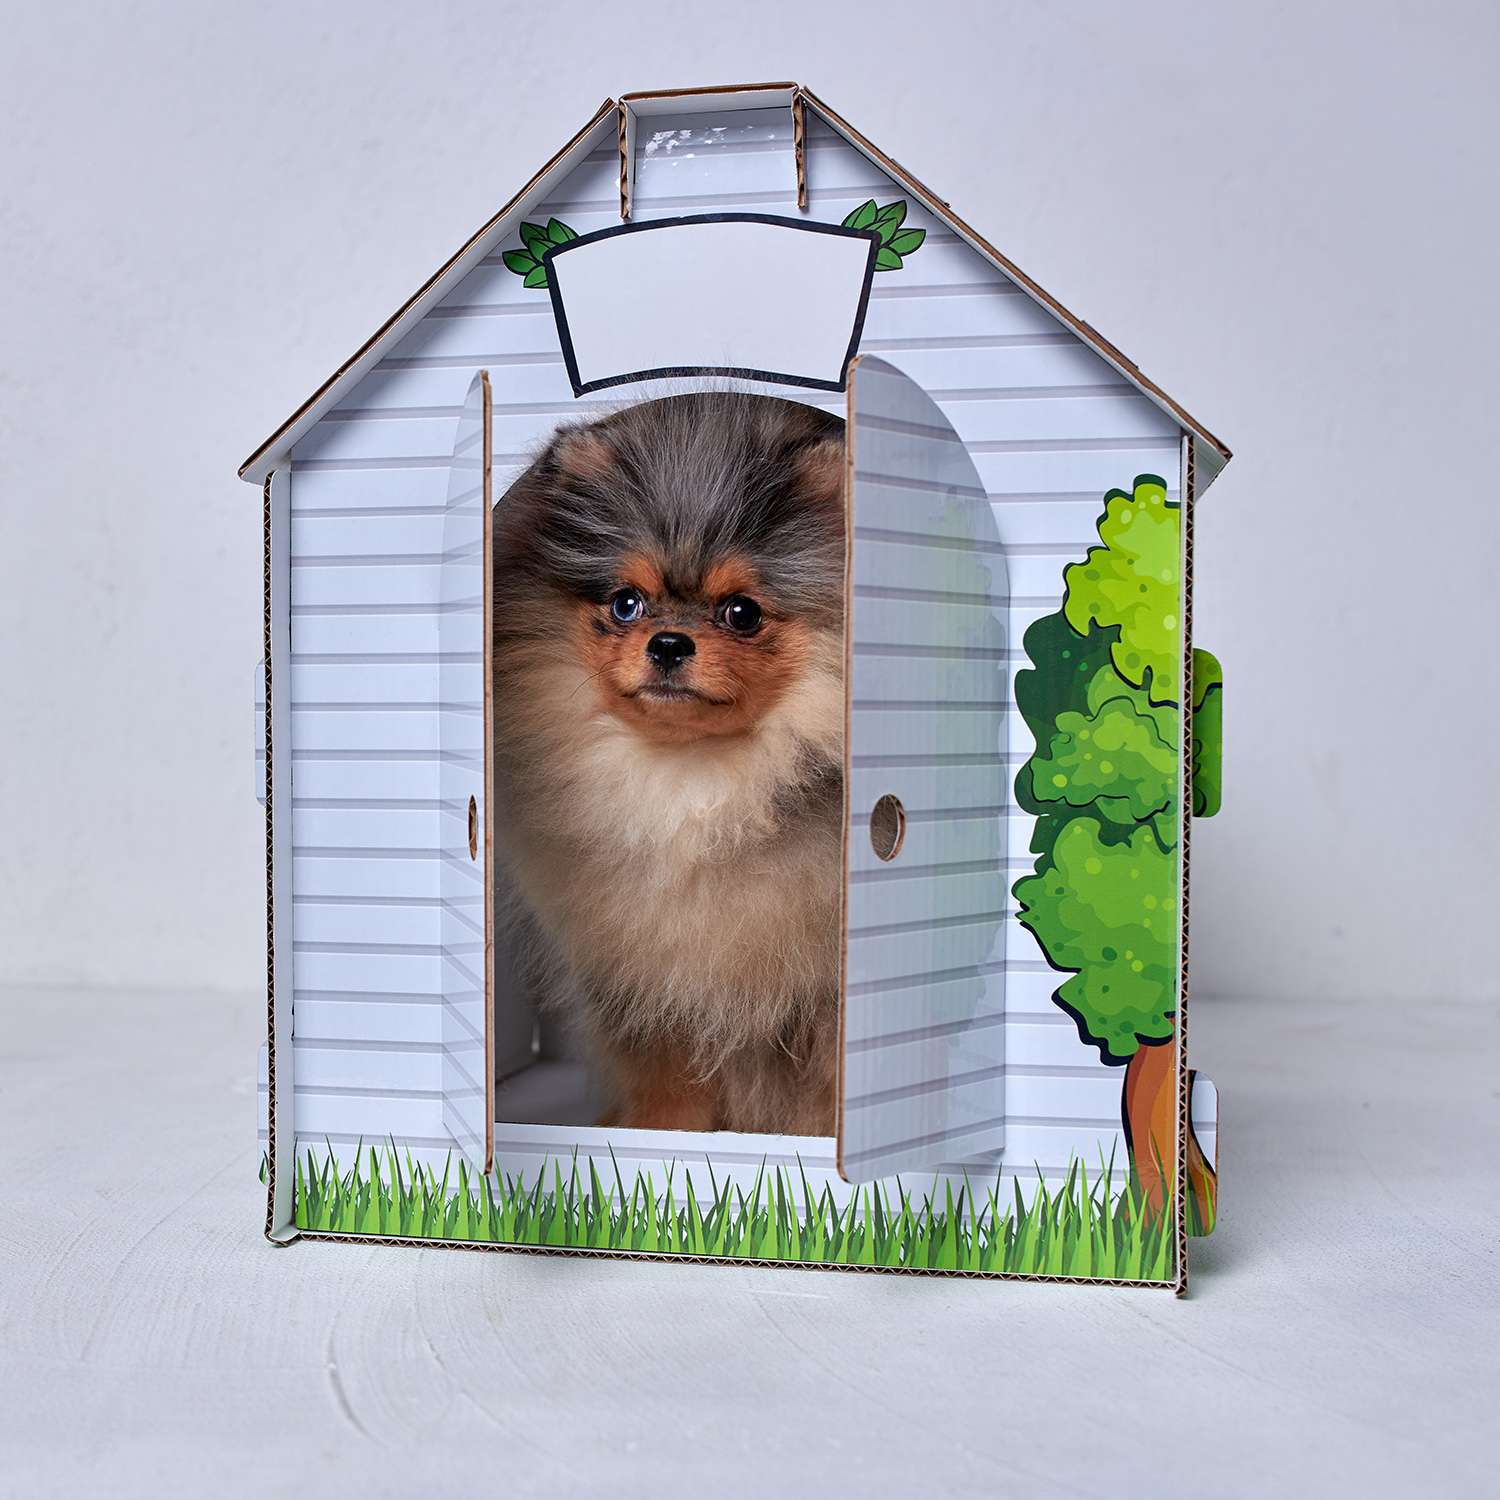 Домик MASKBRO улучшенный картонный для кошек и собак с когтеточкой и мятой - фото 3